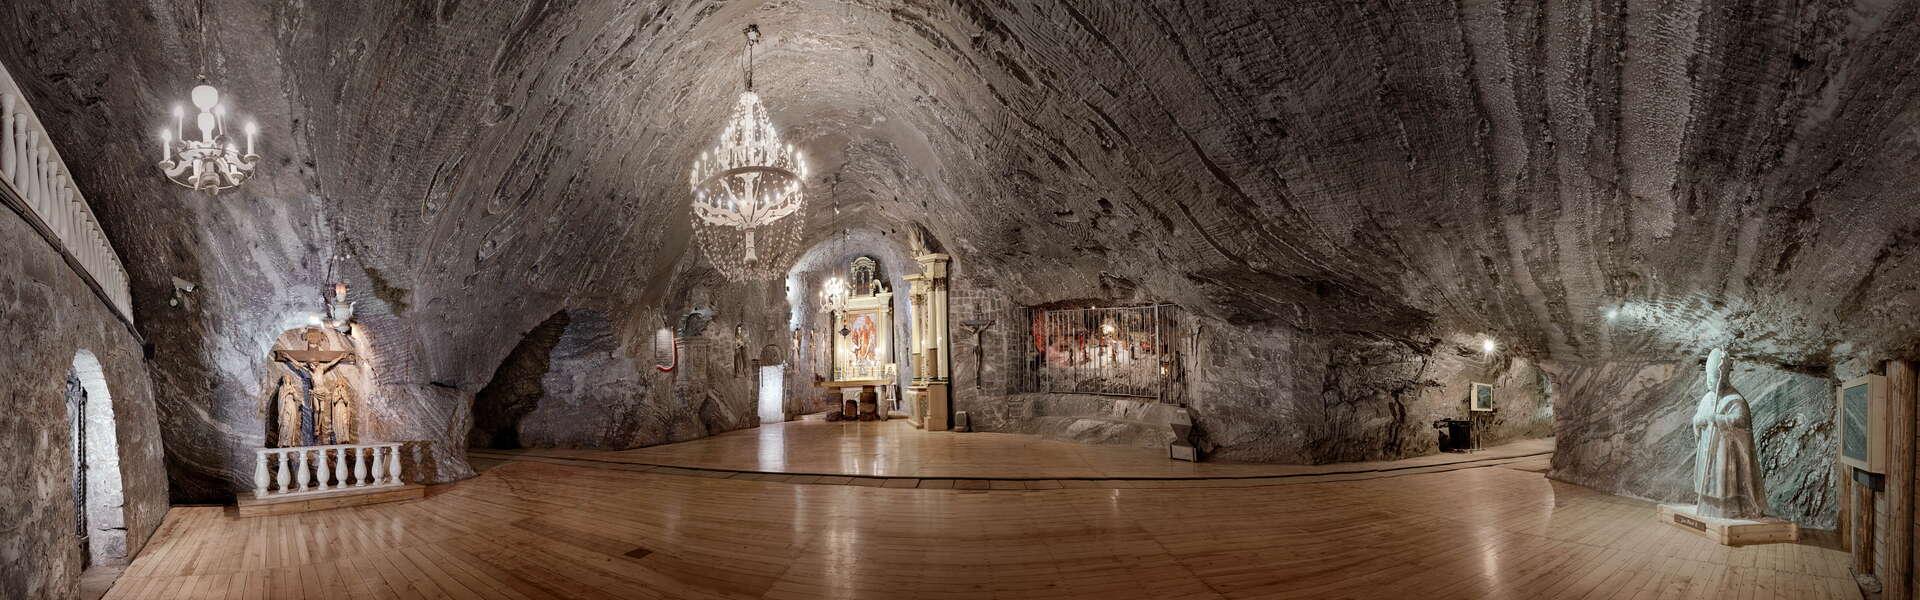 Chapel Bochnia Salt Mine.